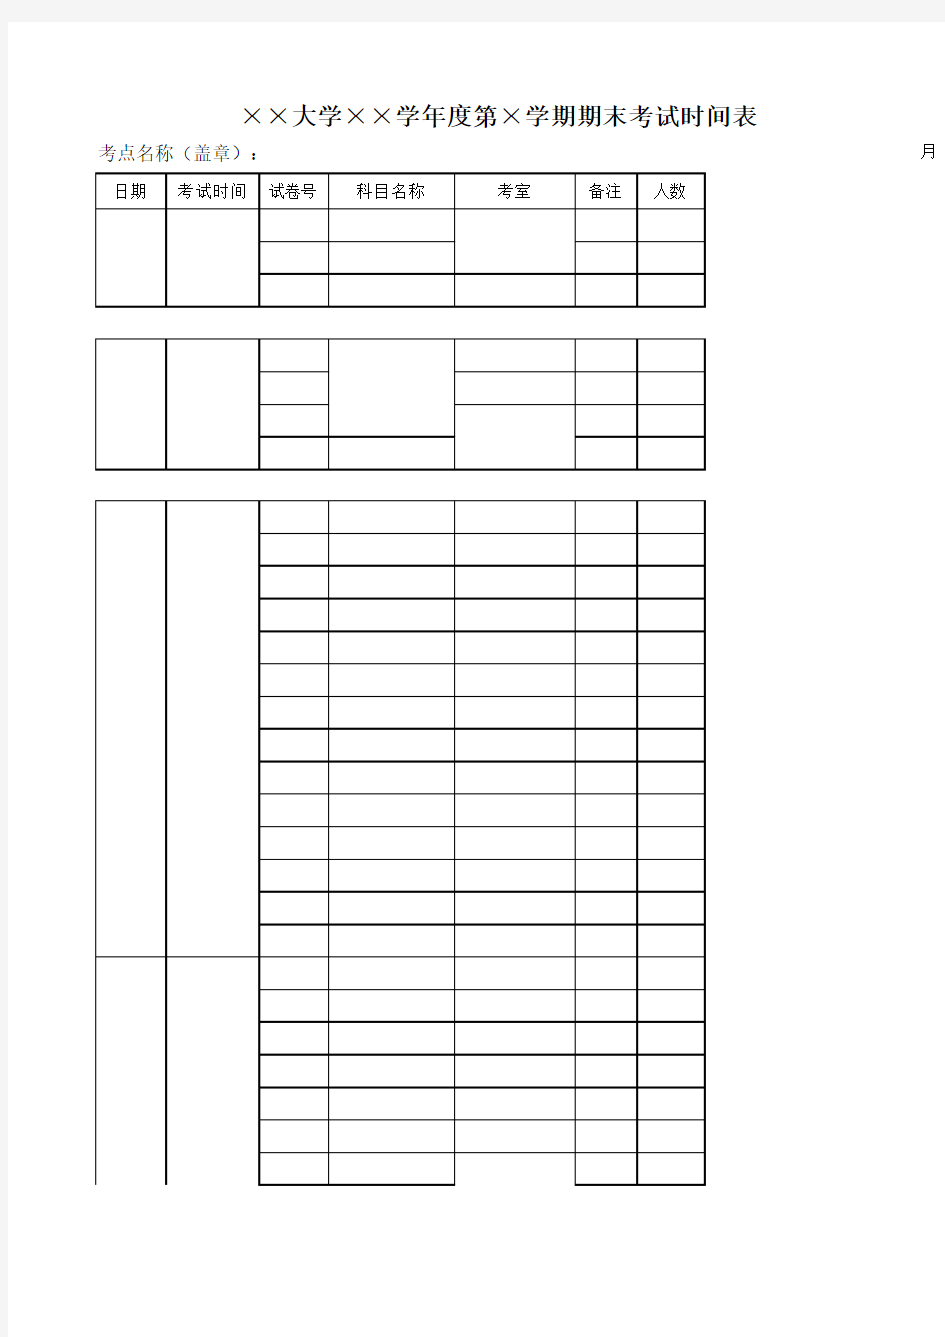 【Excel表格模板】大学年度期末考试时间表 (2)